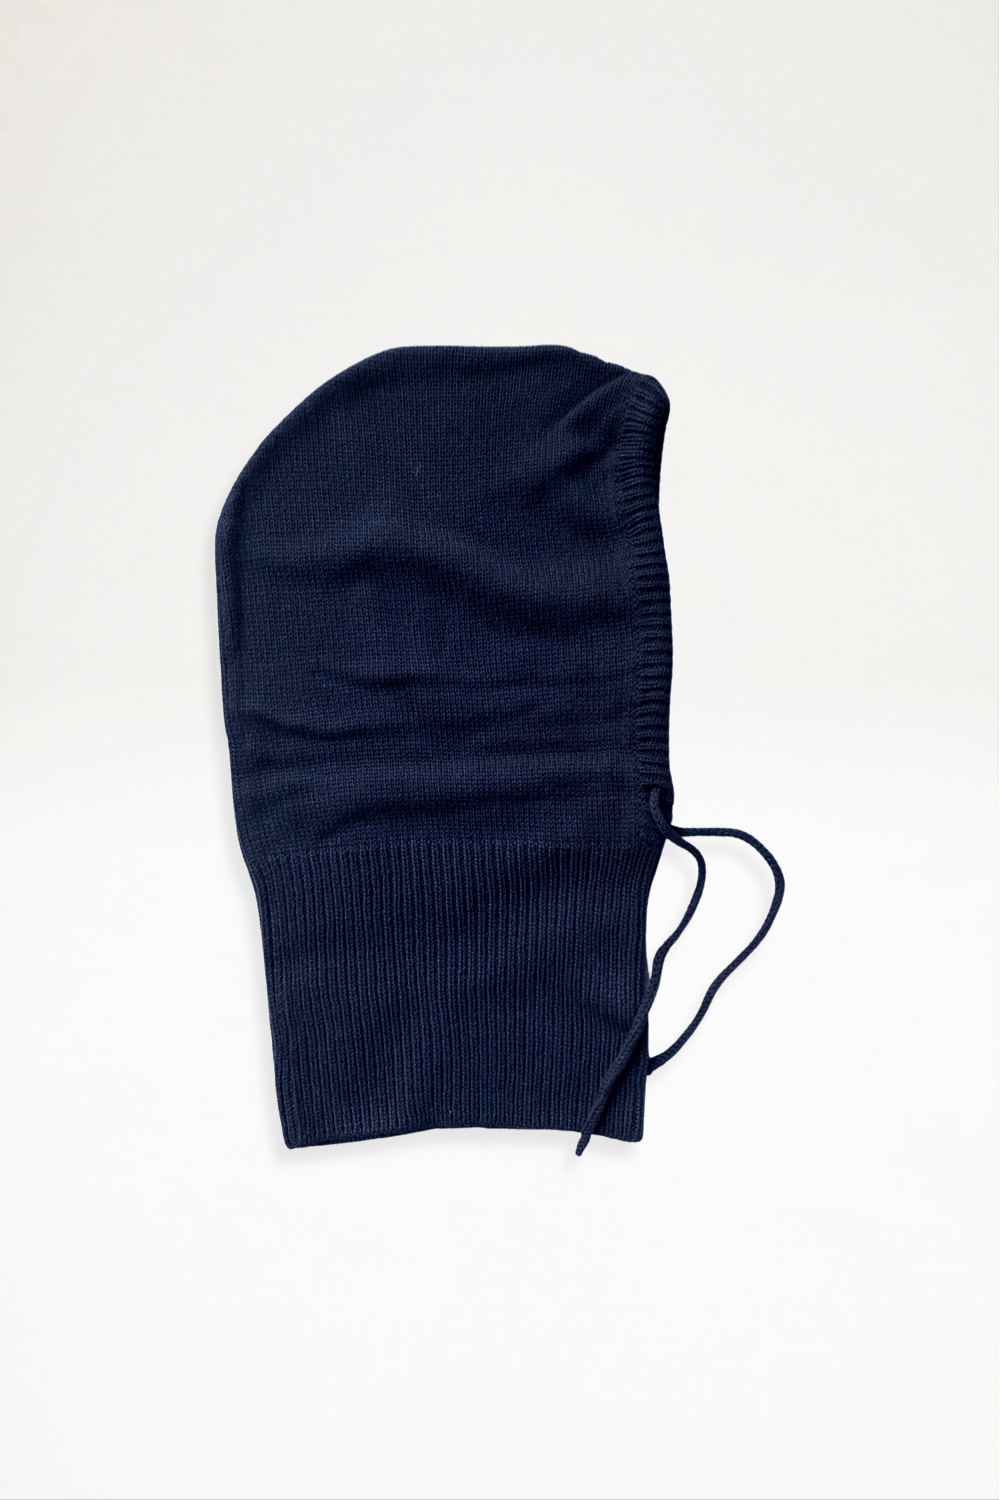 Tulip Knit Atelier - Merino Knitted Hoods - Black - Ensemble Studios